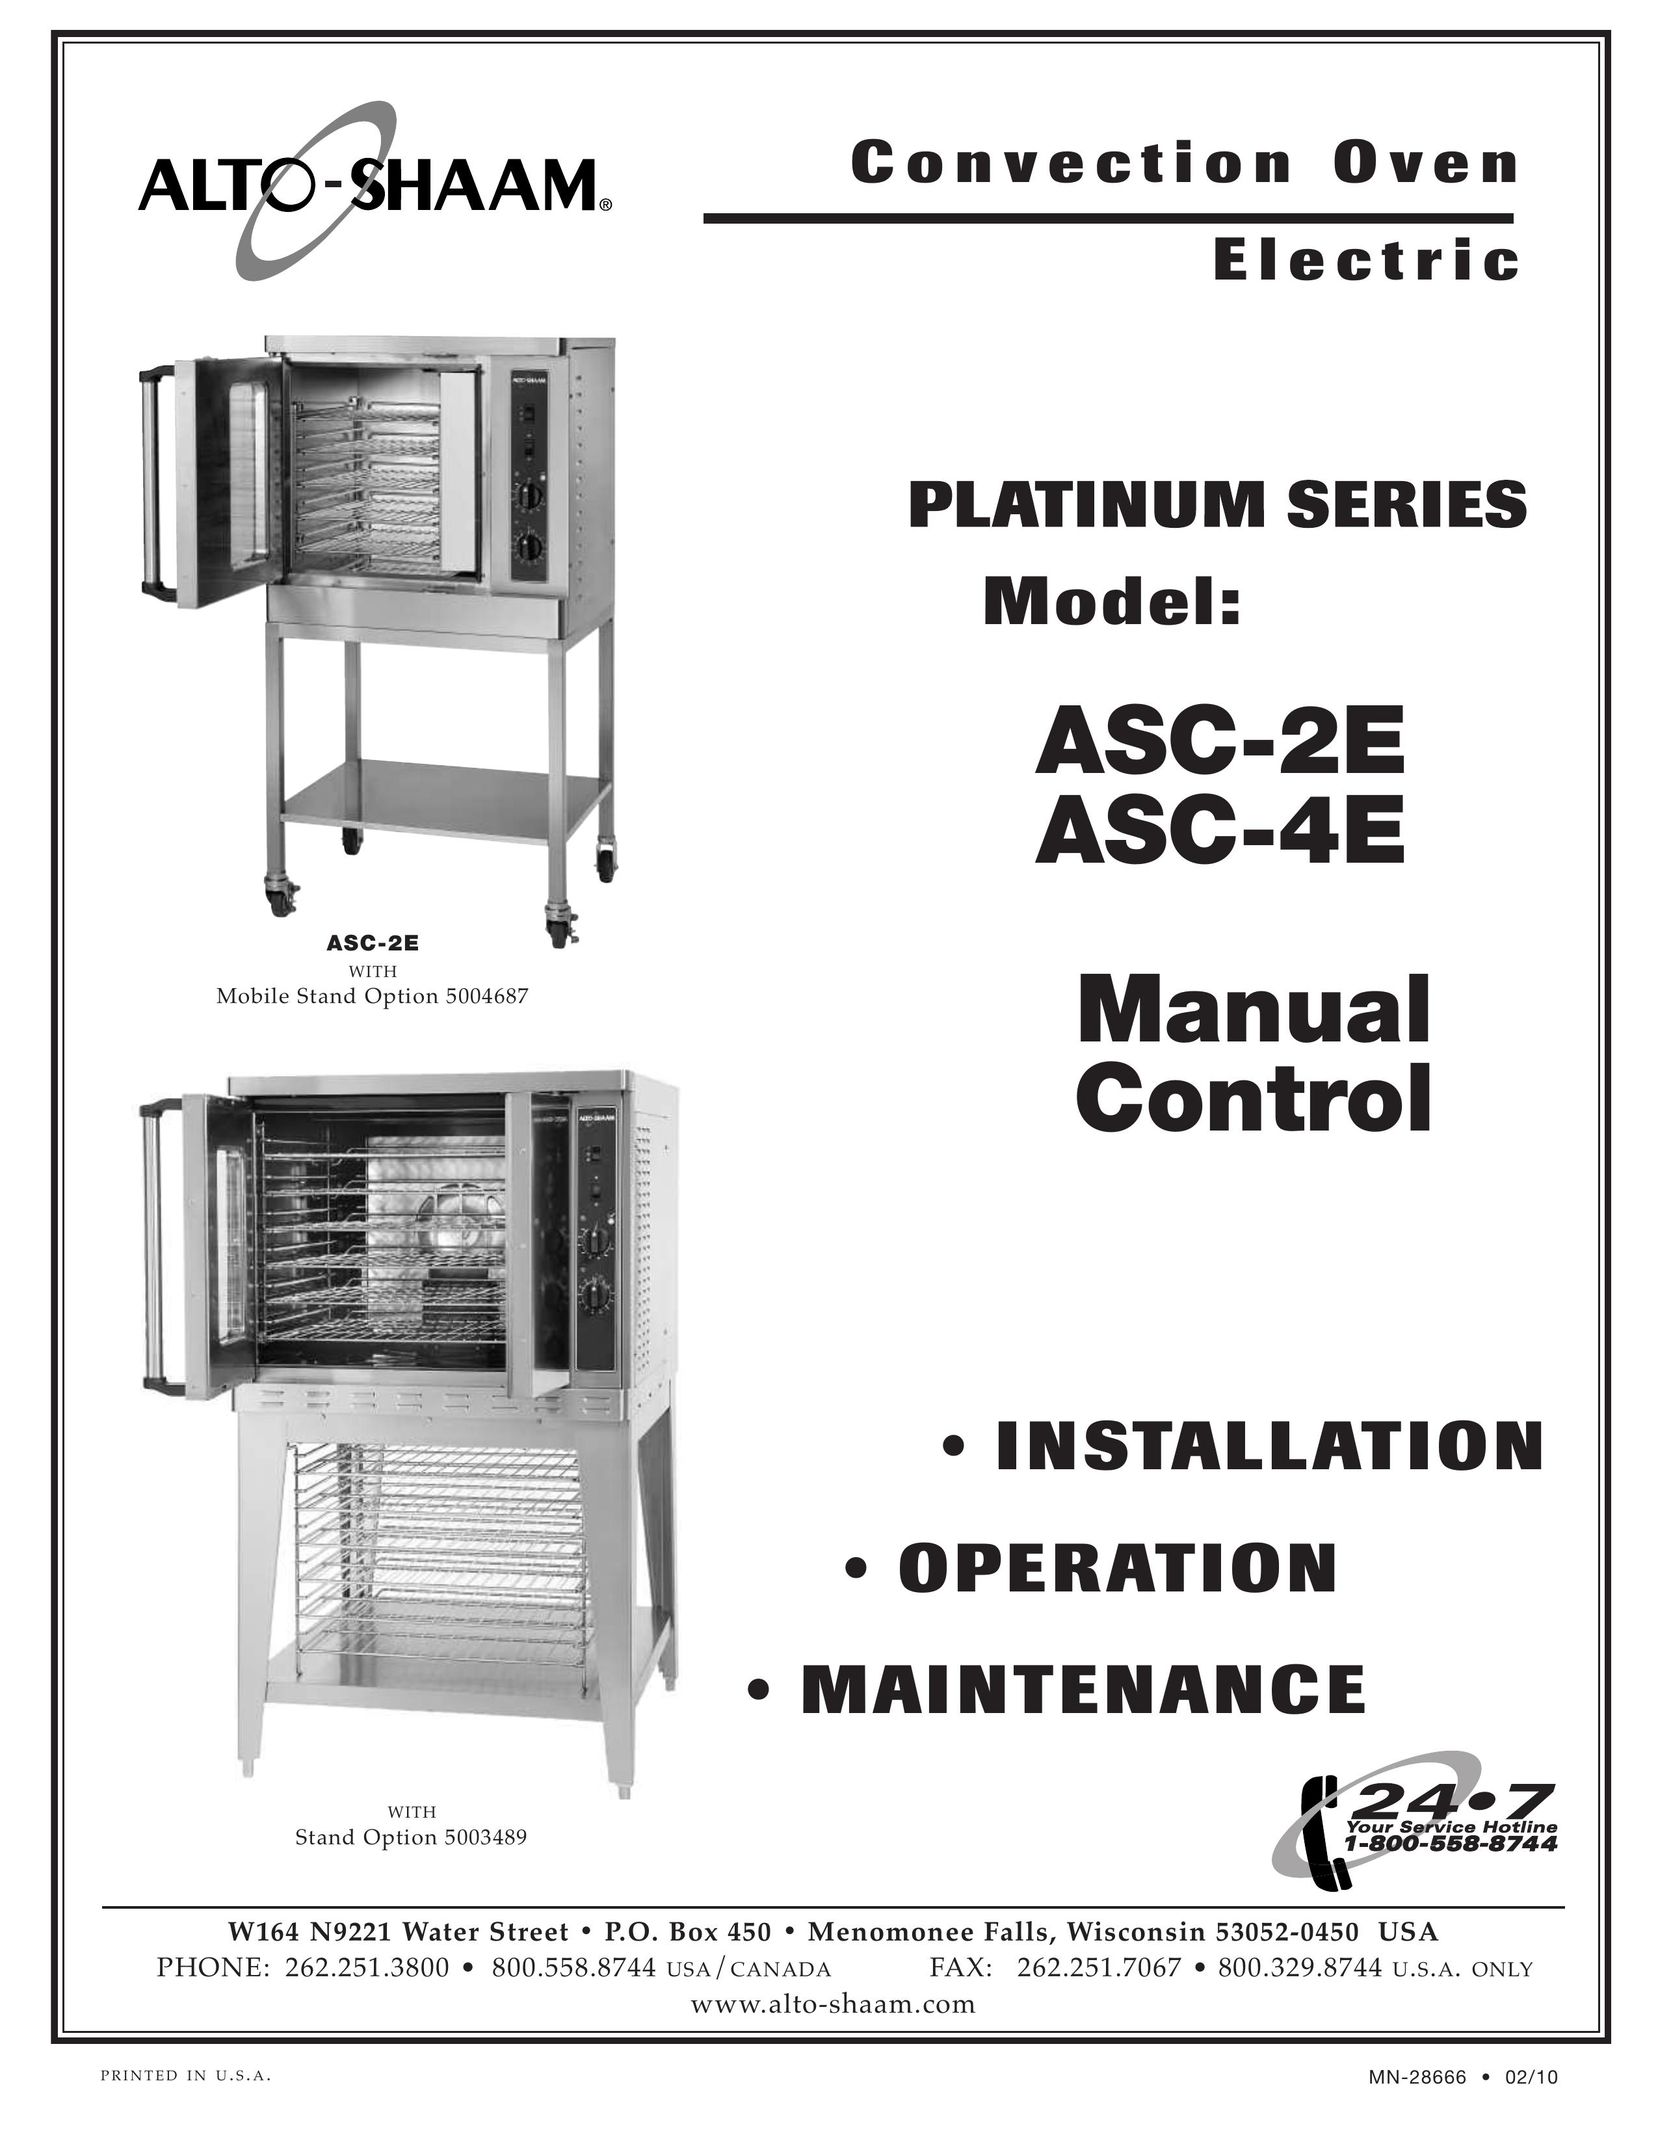 Alto-Shaam ASC-4E Convection Oven User Manual